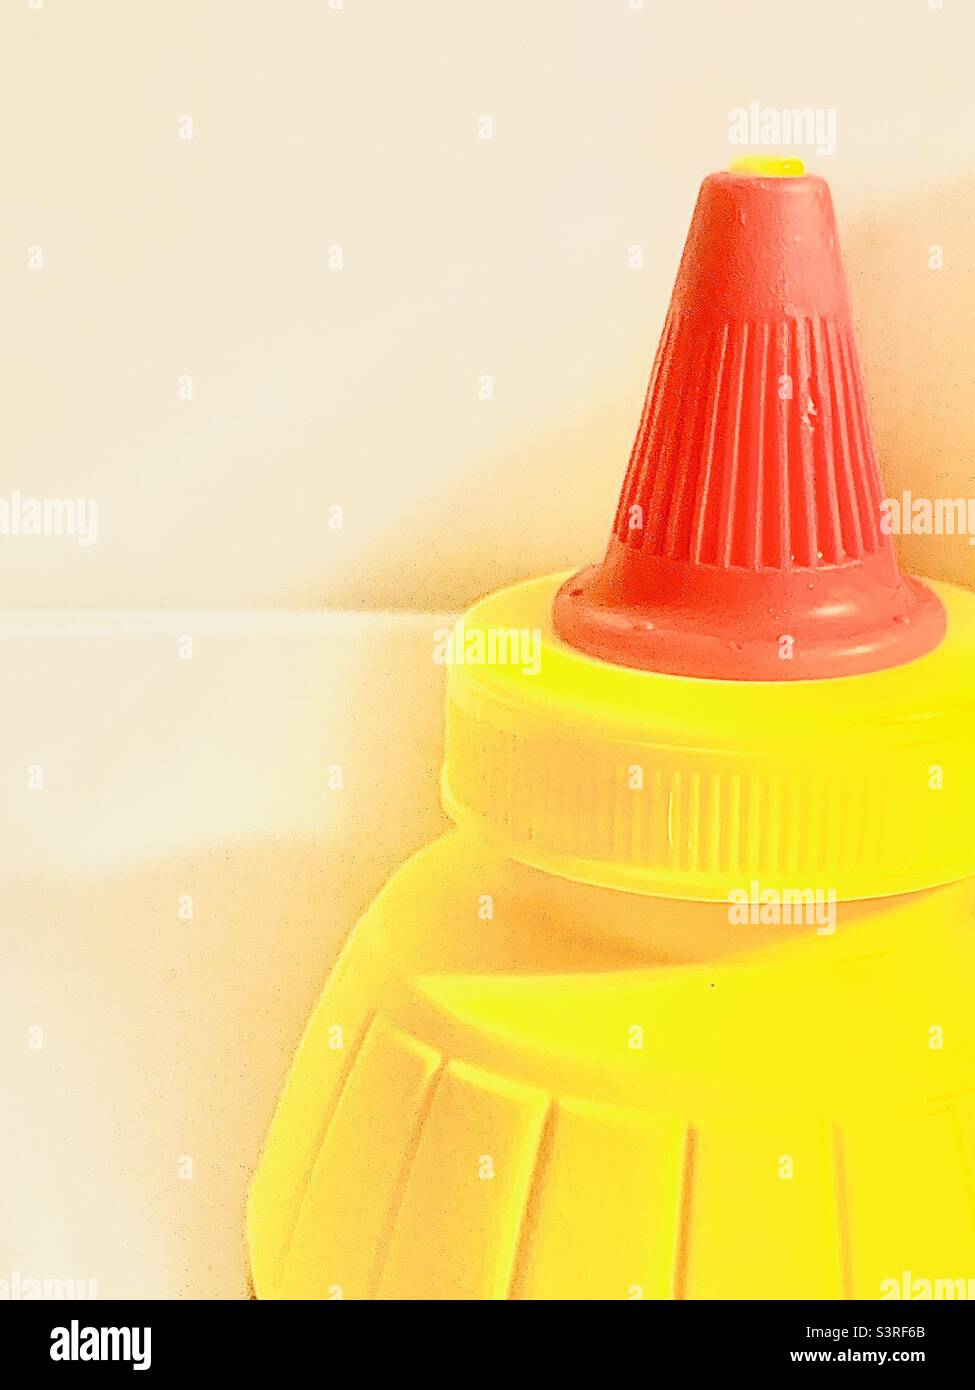 Primo piano di una bottiglia di senape gialla con coperchio rosso sulla destra con sfondo bianco per lo spazio di stampa Foto Stock